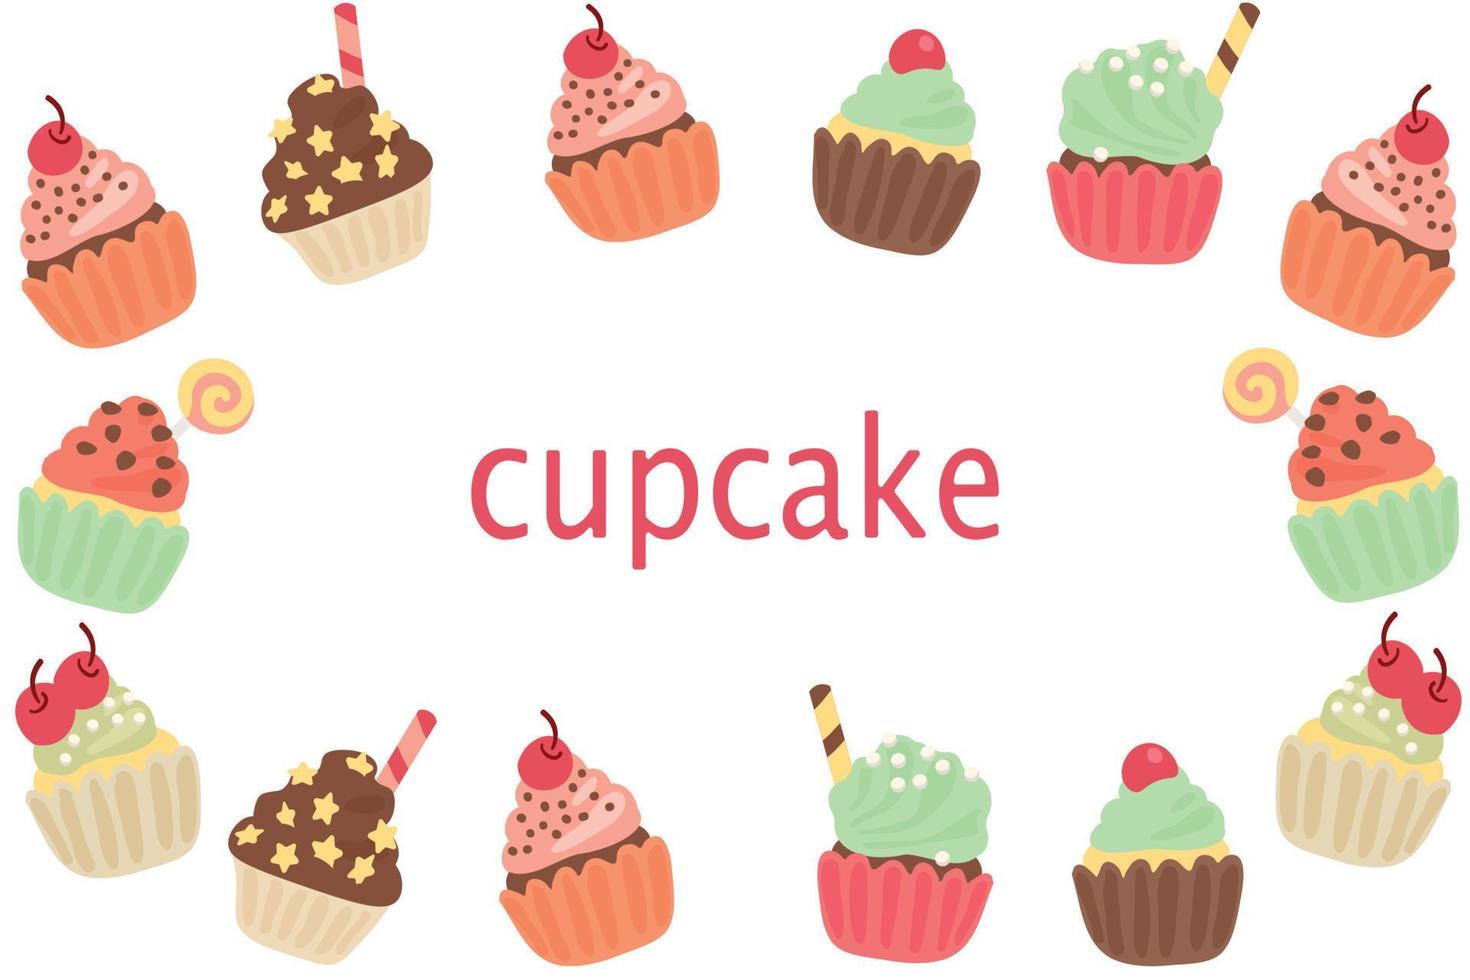 achtergrond van heerlijk cupcakes. toetje vector illustratie ontwerp.